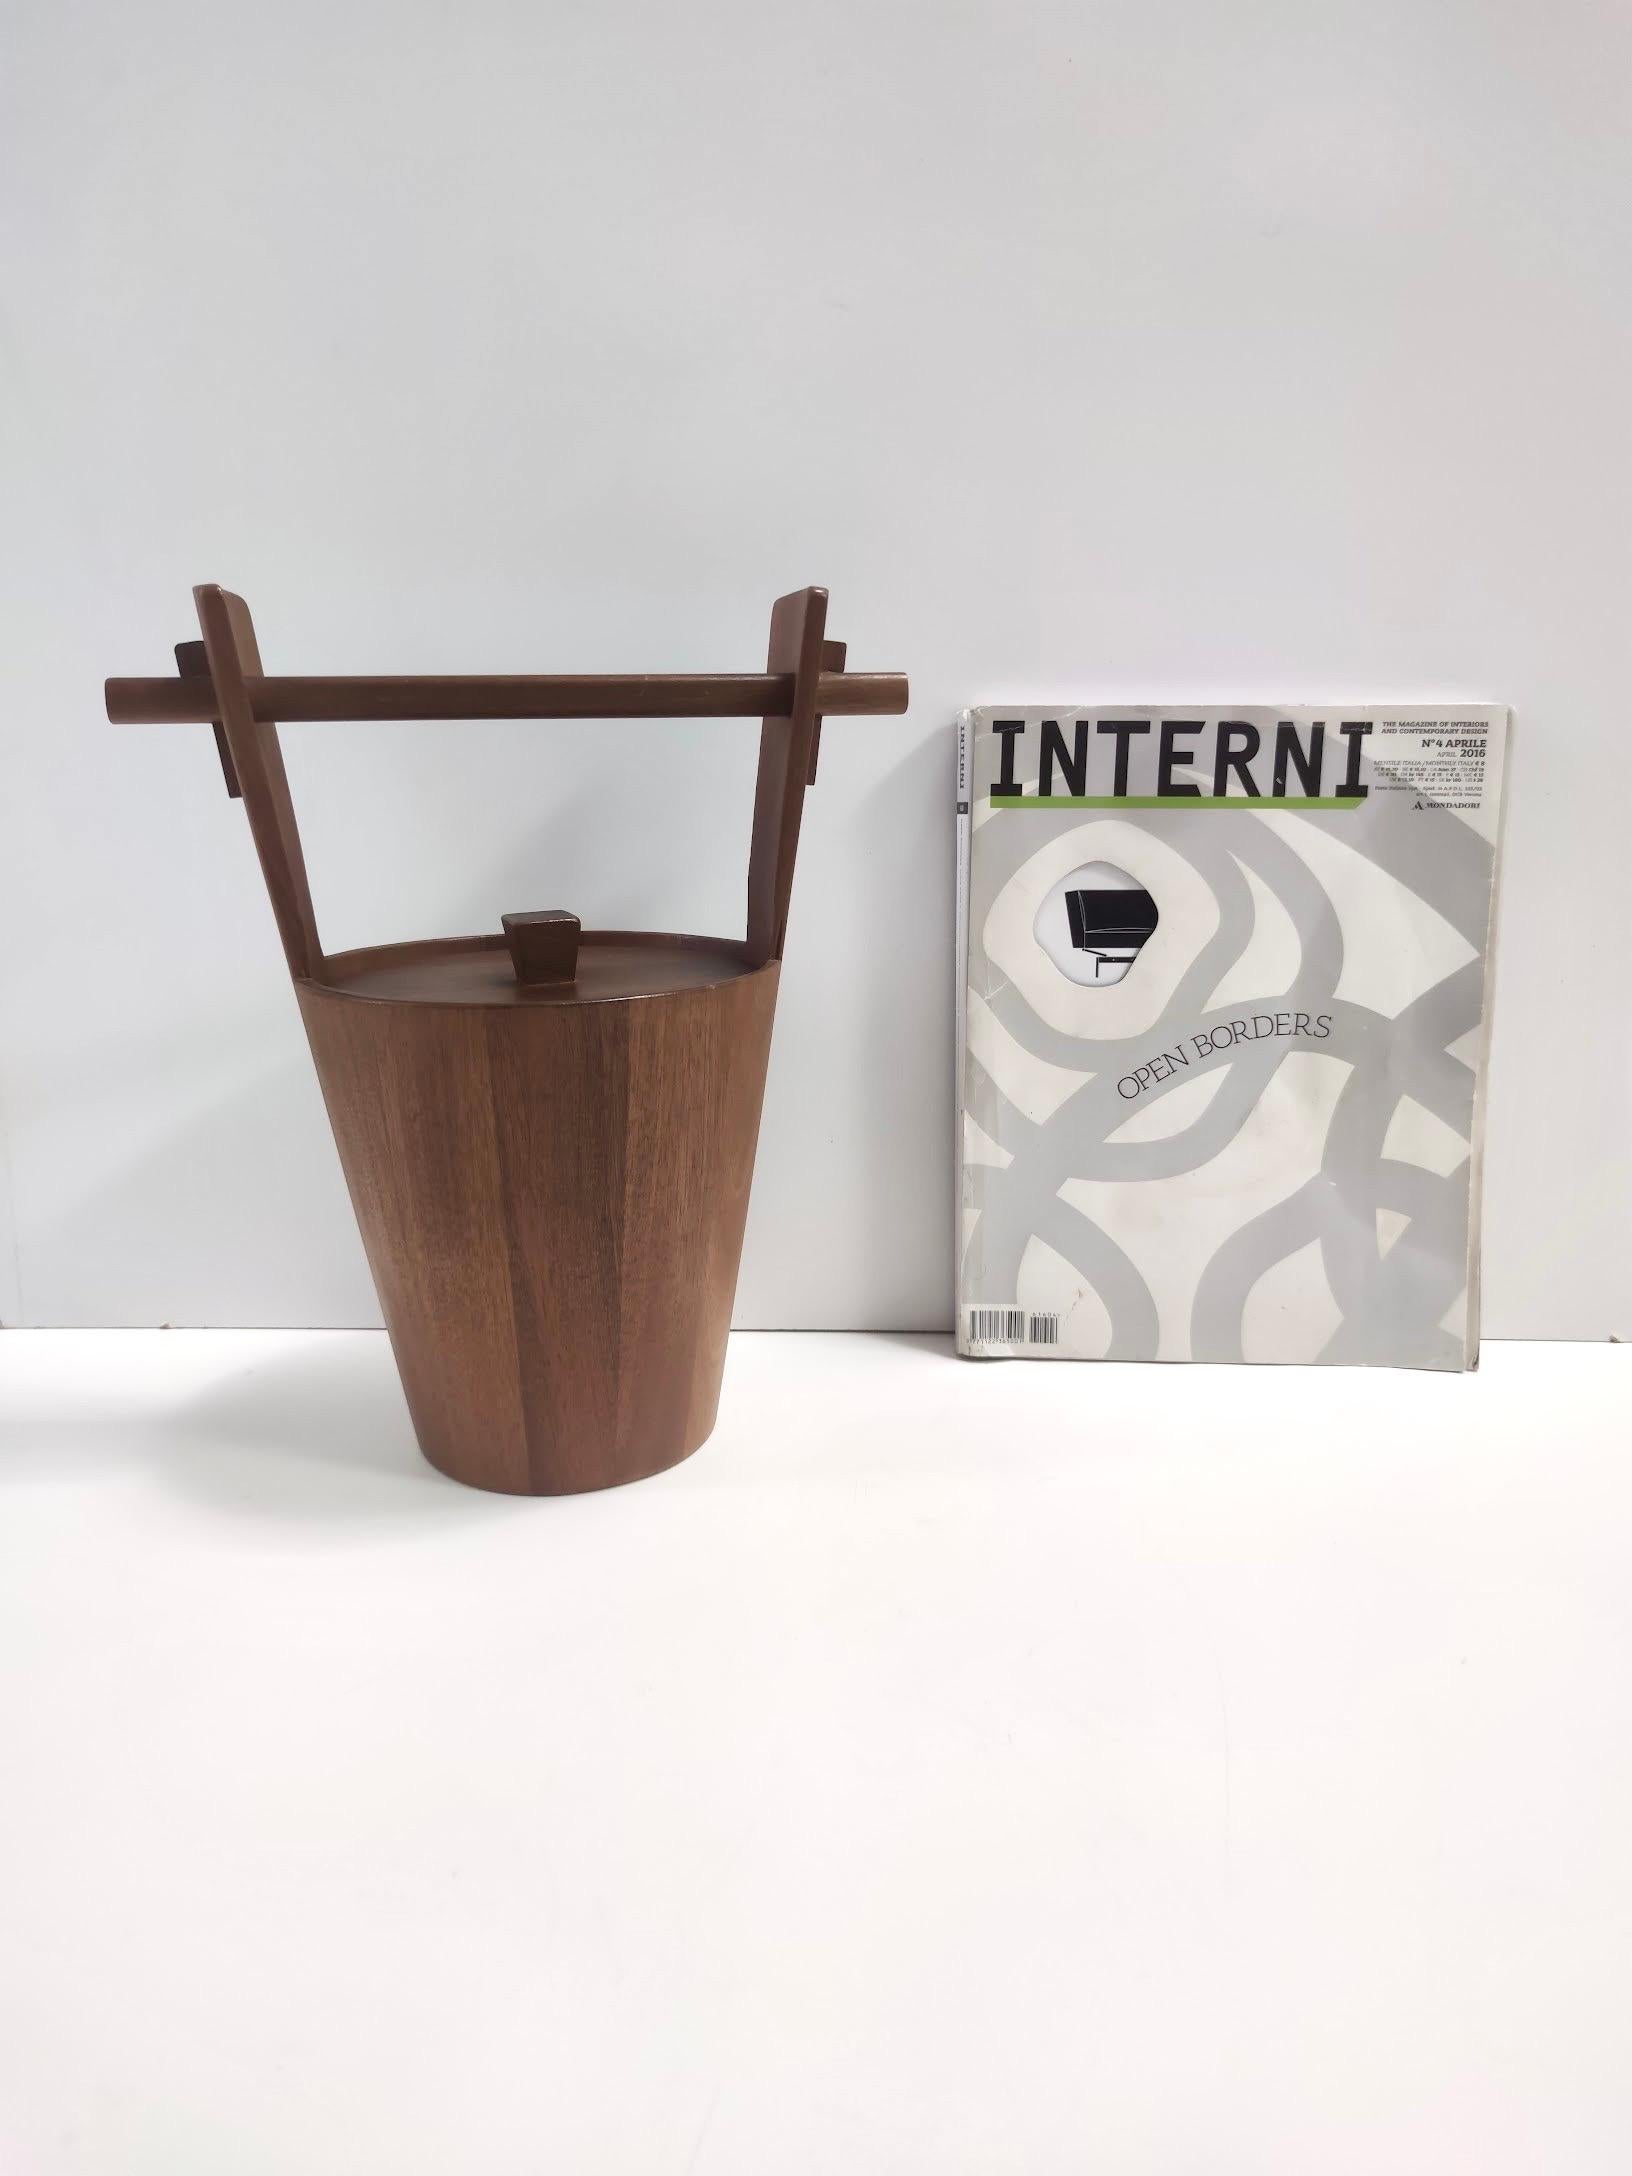 Hergestellt in Italien, 1970er Jahre.
Dies ist ein Eiskübel aus ebonisierter Buche mit goldenem Metall im Inneren.  
Es könnte leichte Gebrauchsspuren aufweisen, da es Vintage ist, aber es kann als in perfektem Originalzustand betrachtet werden und